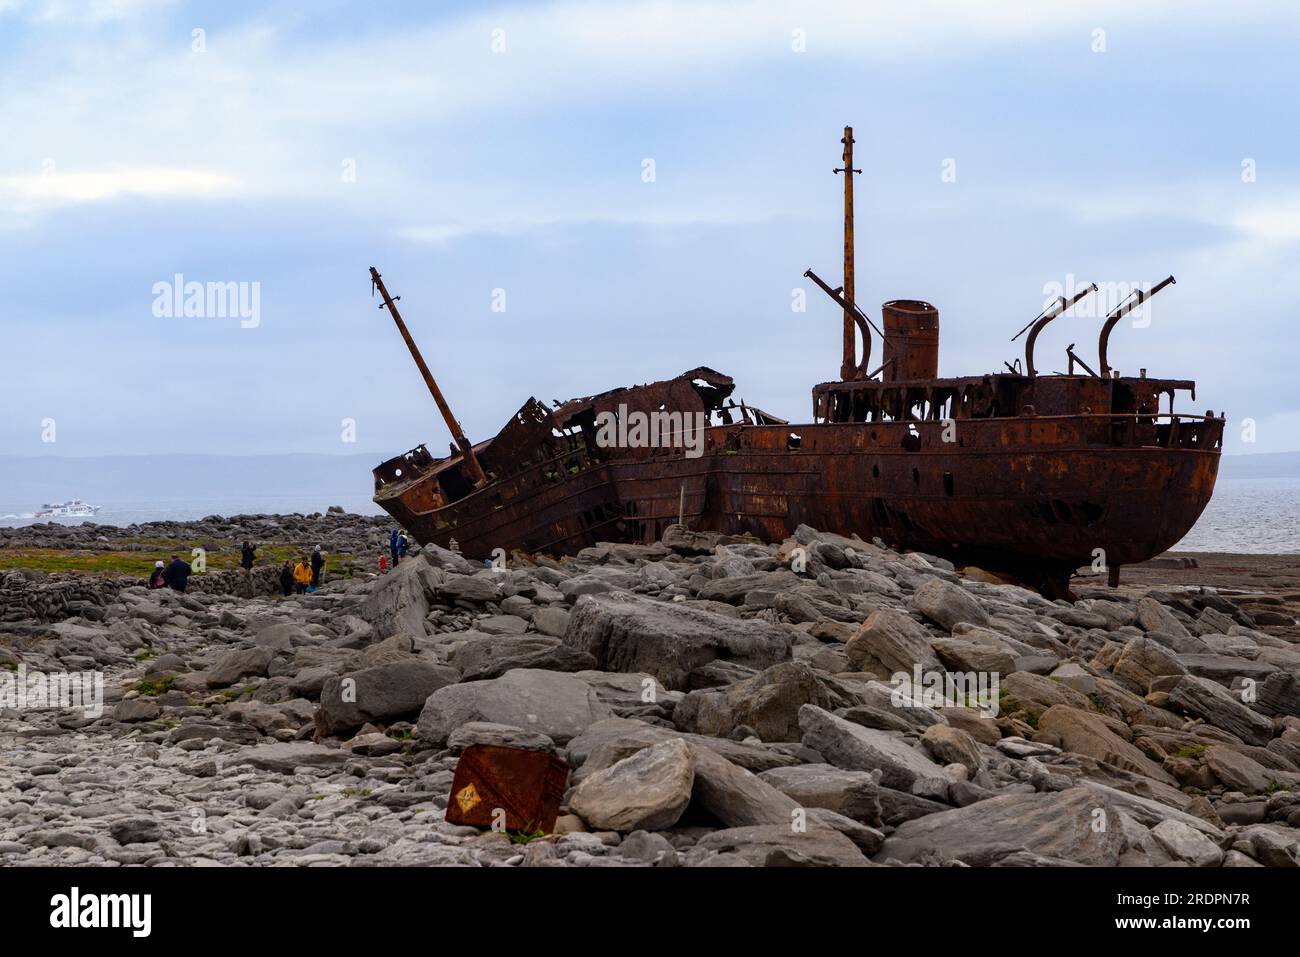 El naufragio oxidado de MV Plassey en Finnis Rock, Inis Oirr o Inisheer, una de las tres islas Aran, República de Irlanda. Foto de stock